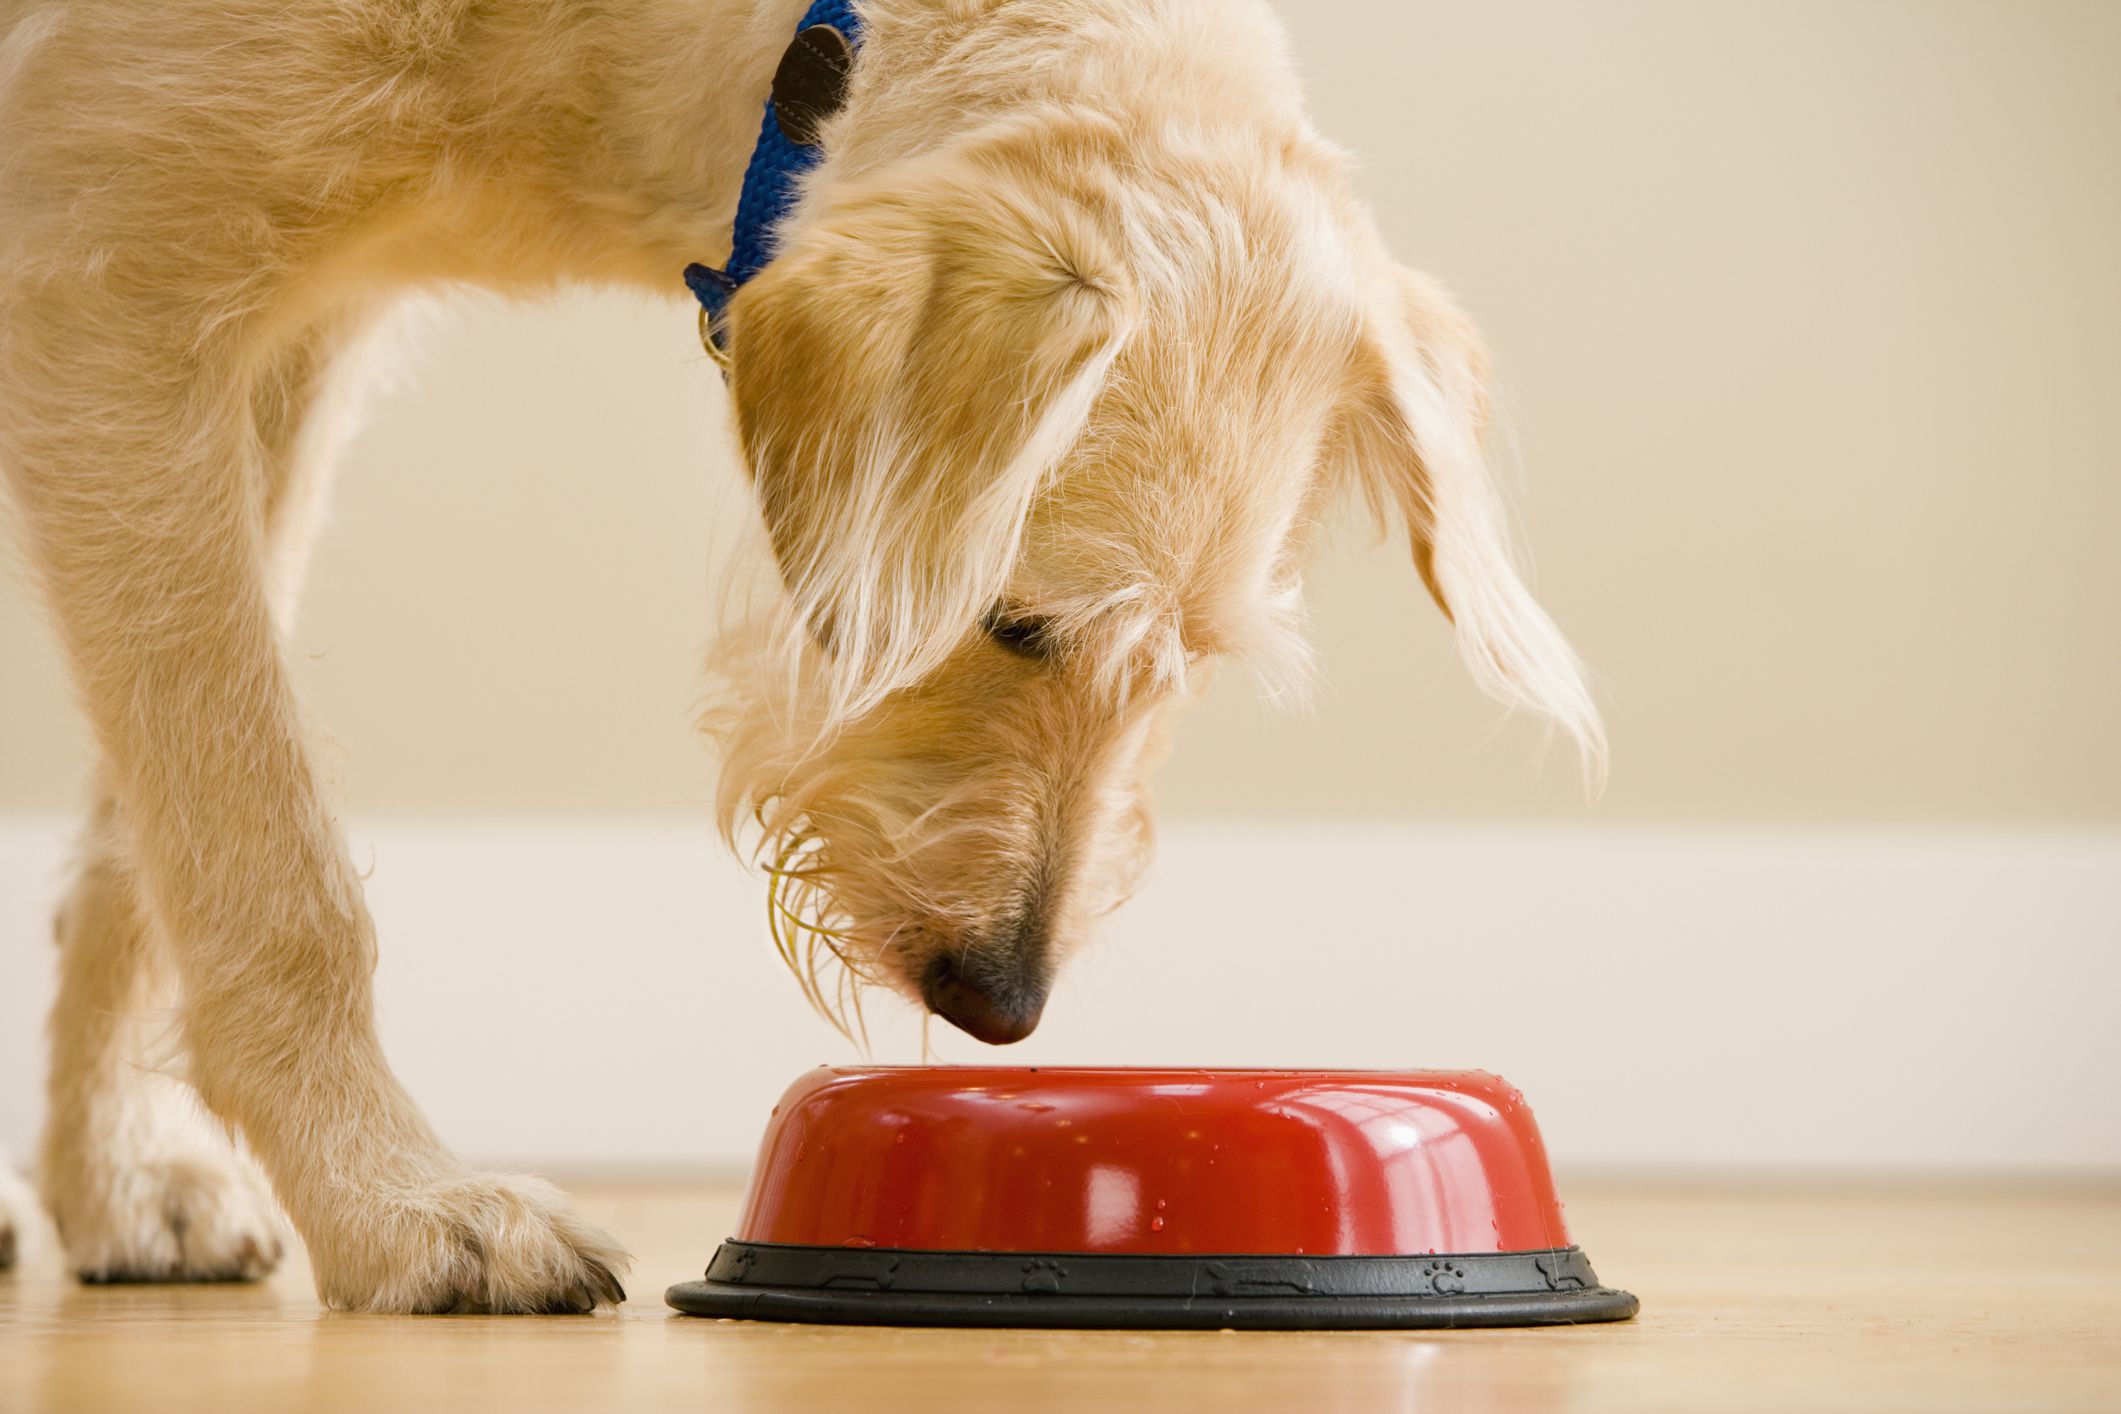 cuidado: no le dé estos alimentos a su perro, puede causarle graves enfermedades